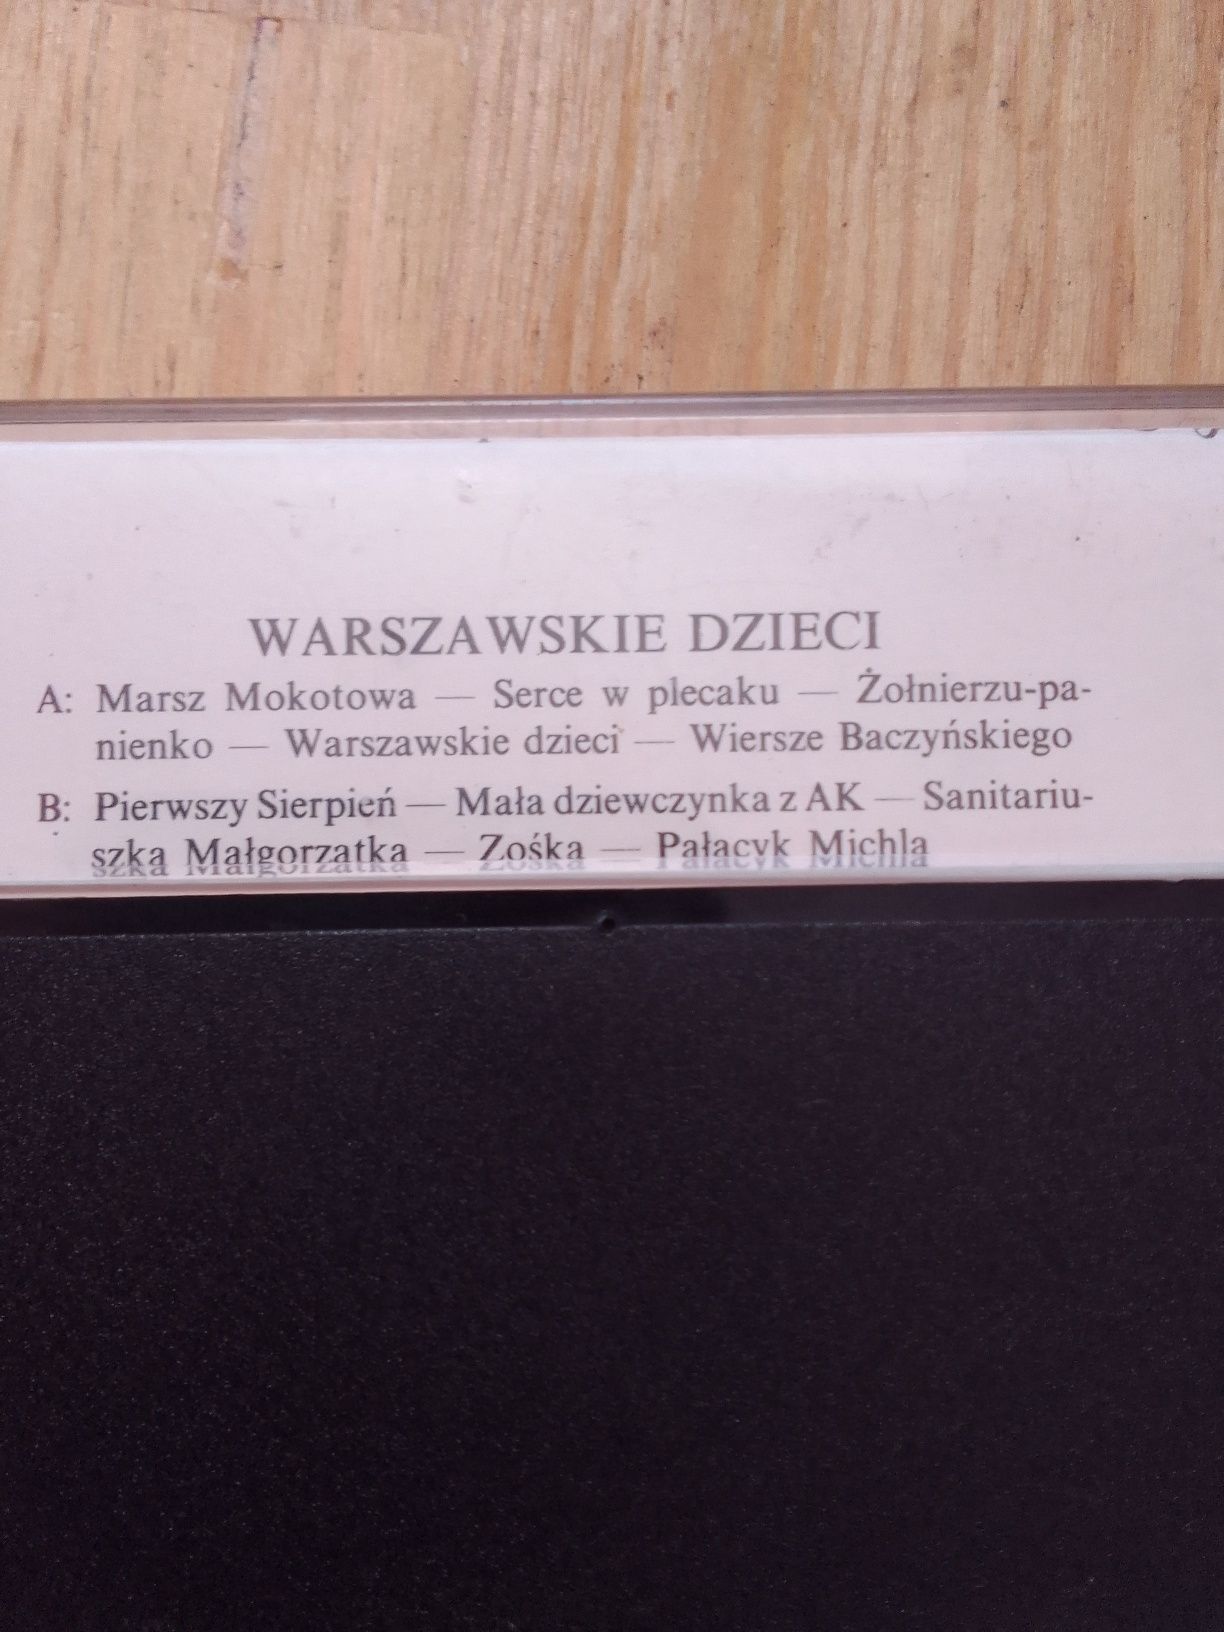 Kaseta audio, warszawskie dzieci 1 sierpnia 1944 rok.